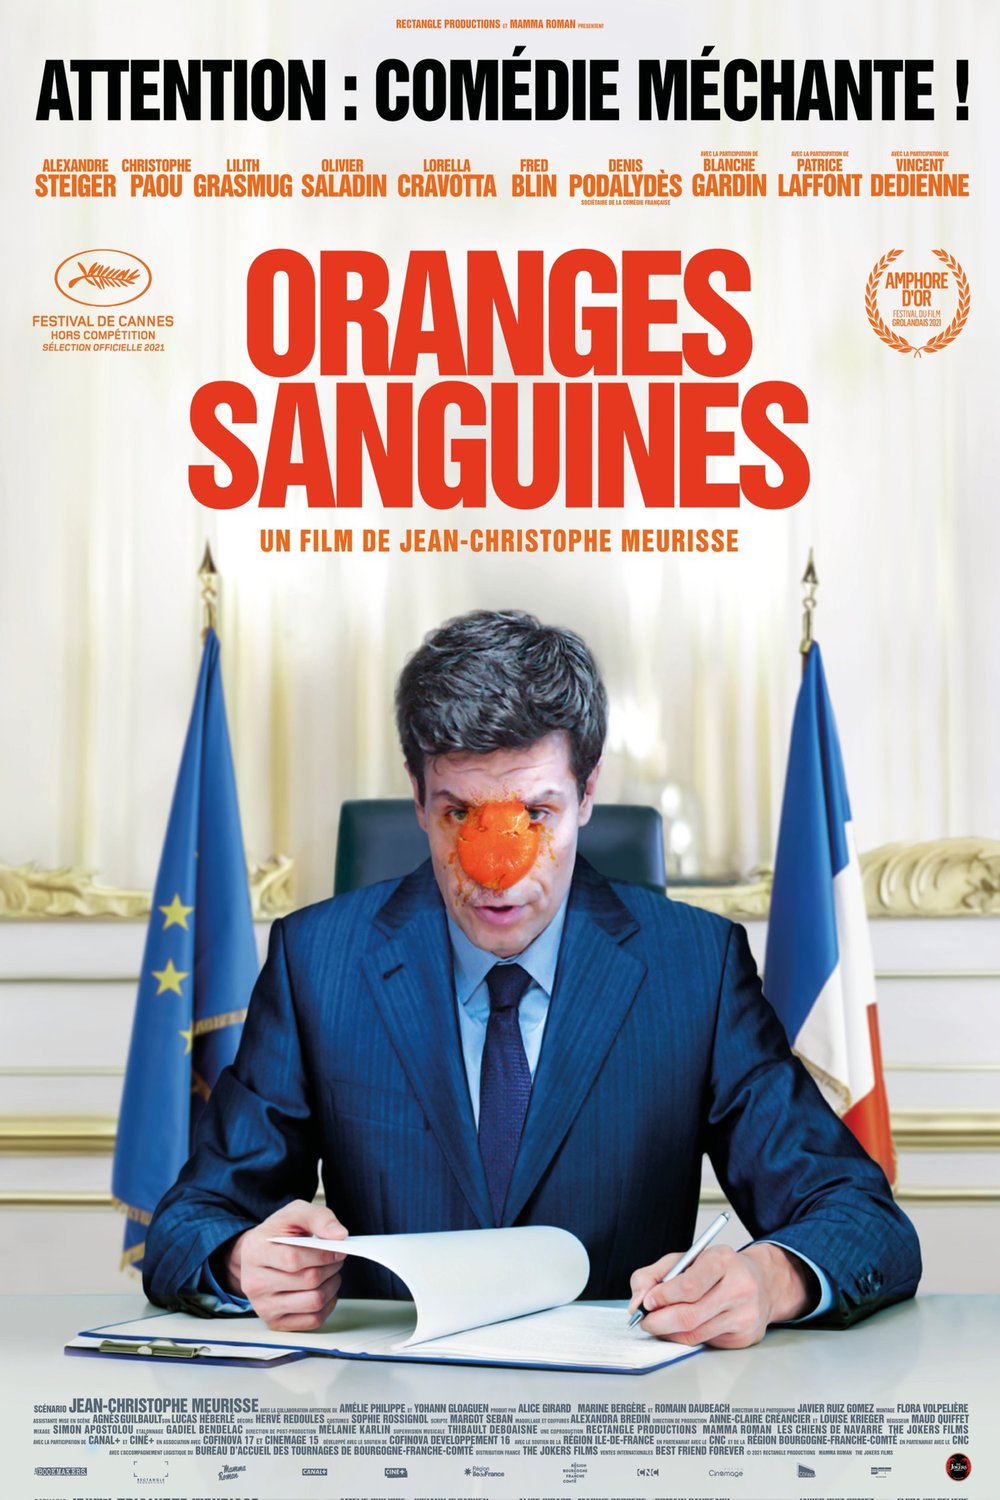 Poster of the movie Oranges sanguines